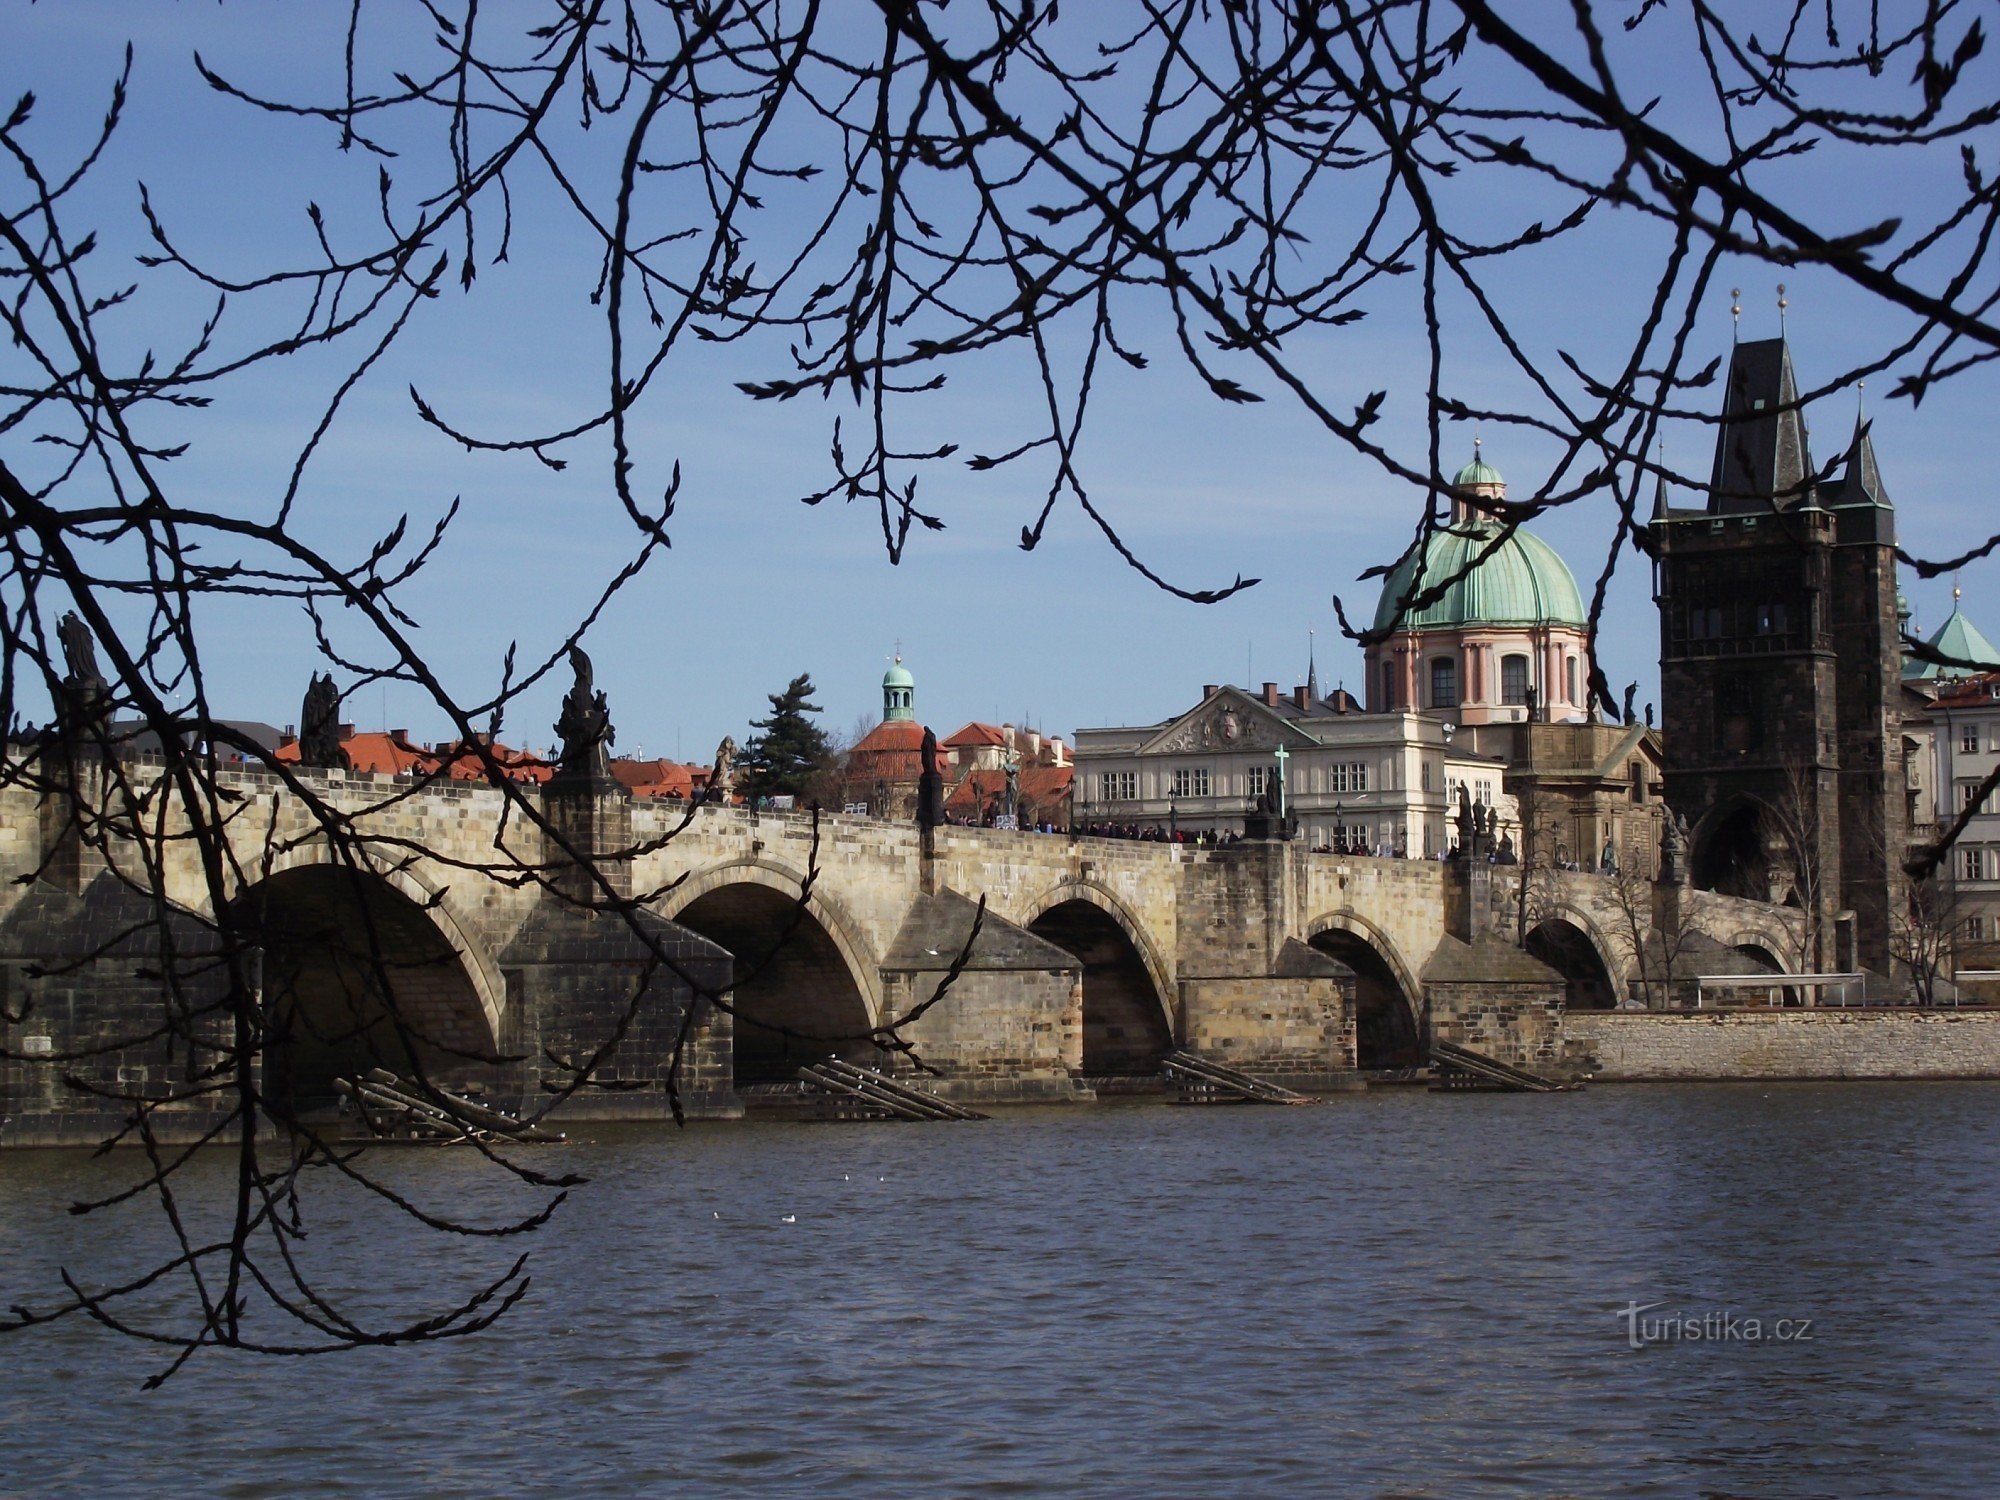 Erotika a Károly-hídon (Prága - Old Town Bridge Tower)